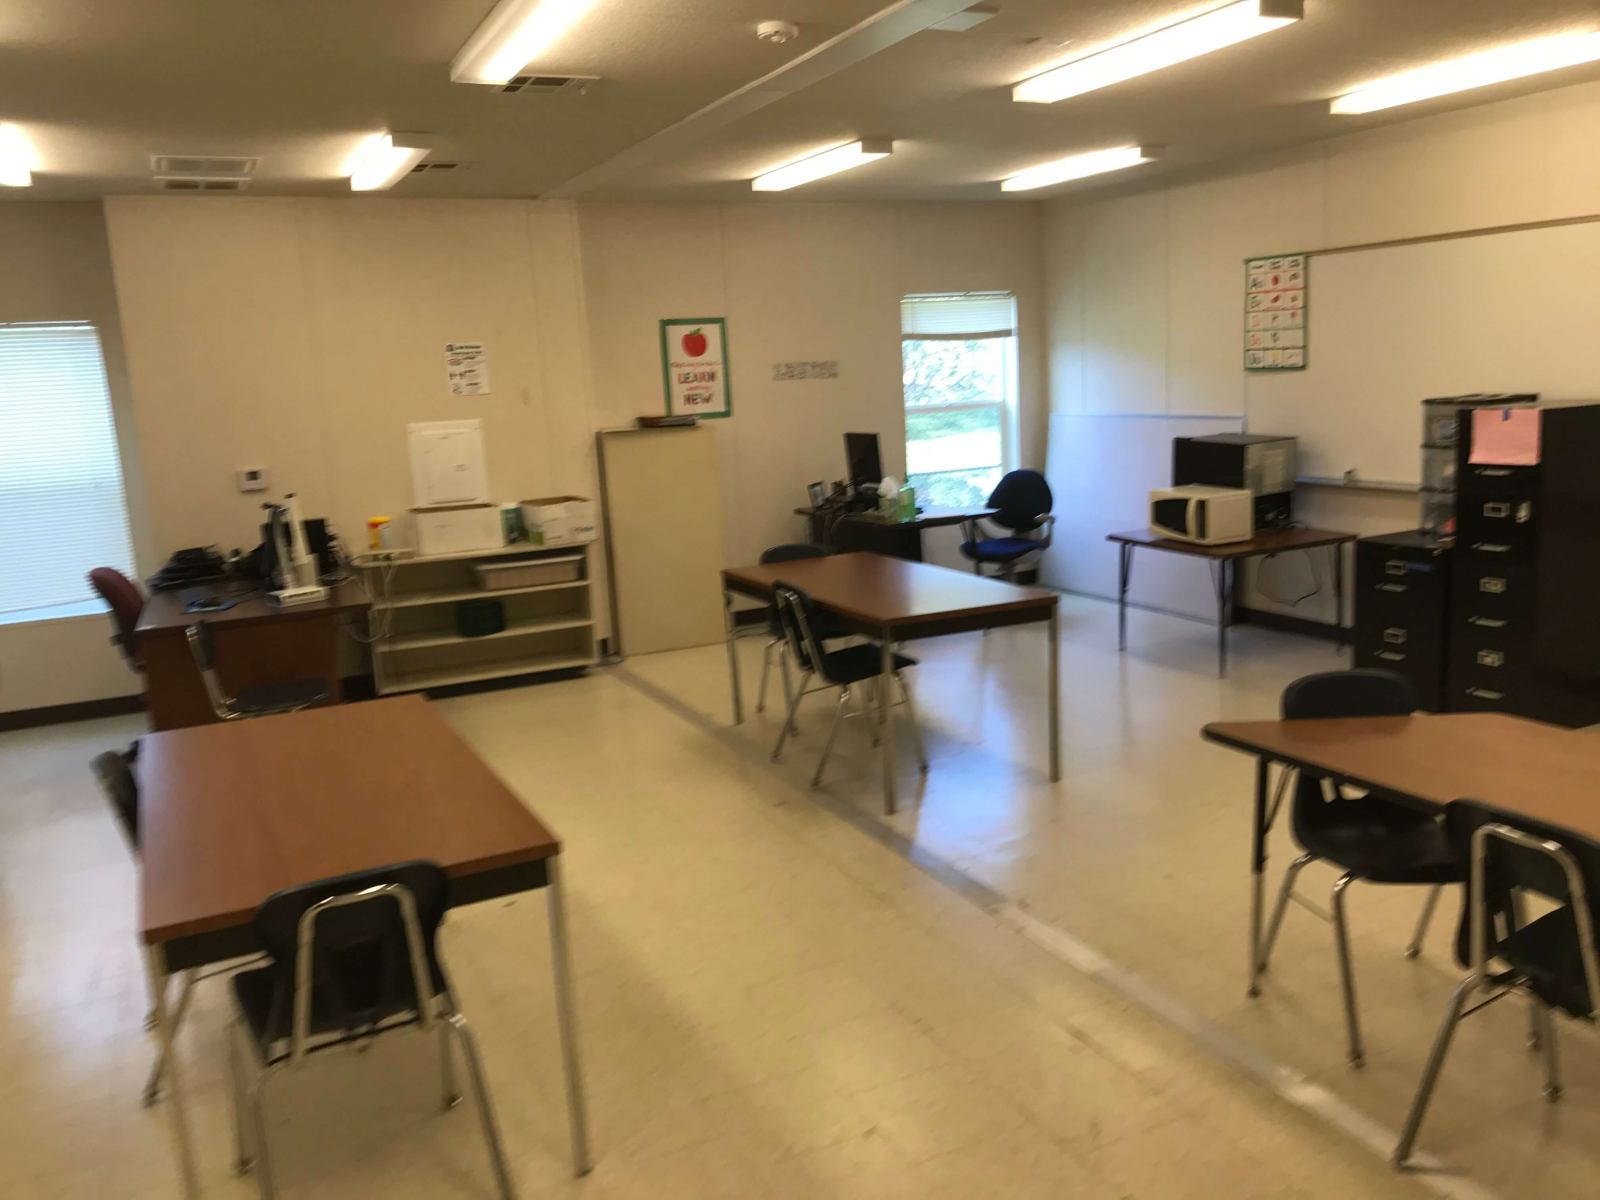 temporary-mobile-classroom-interior-7